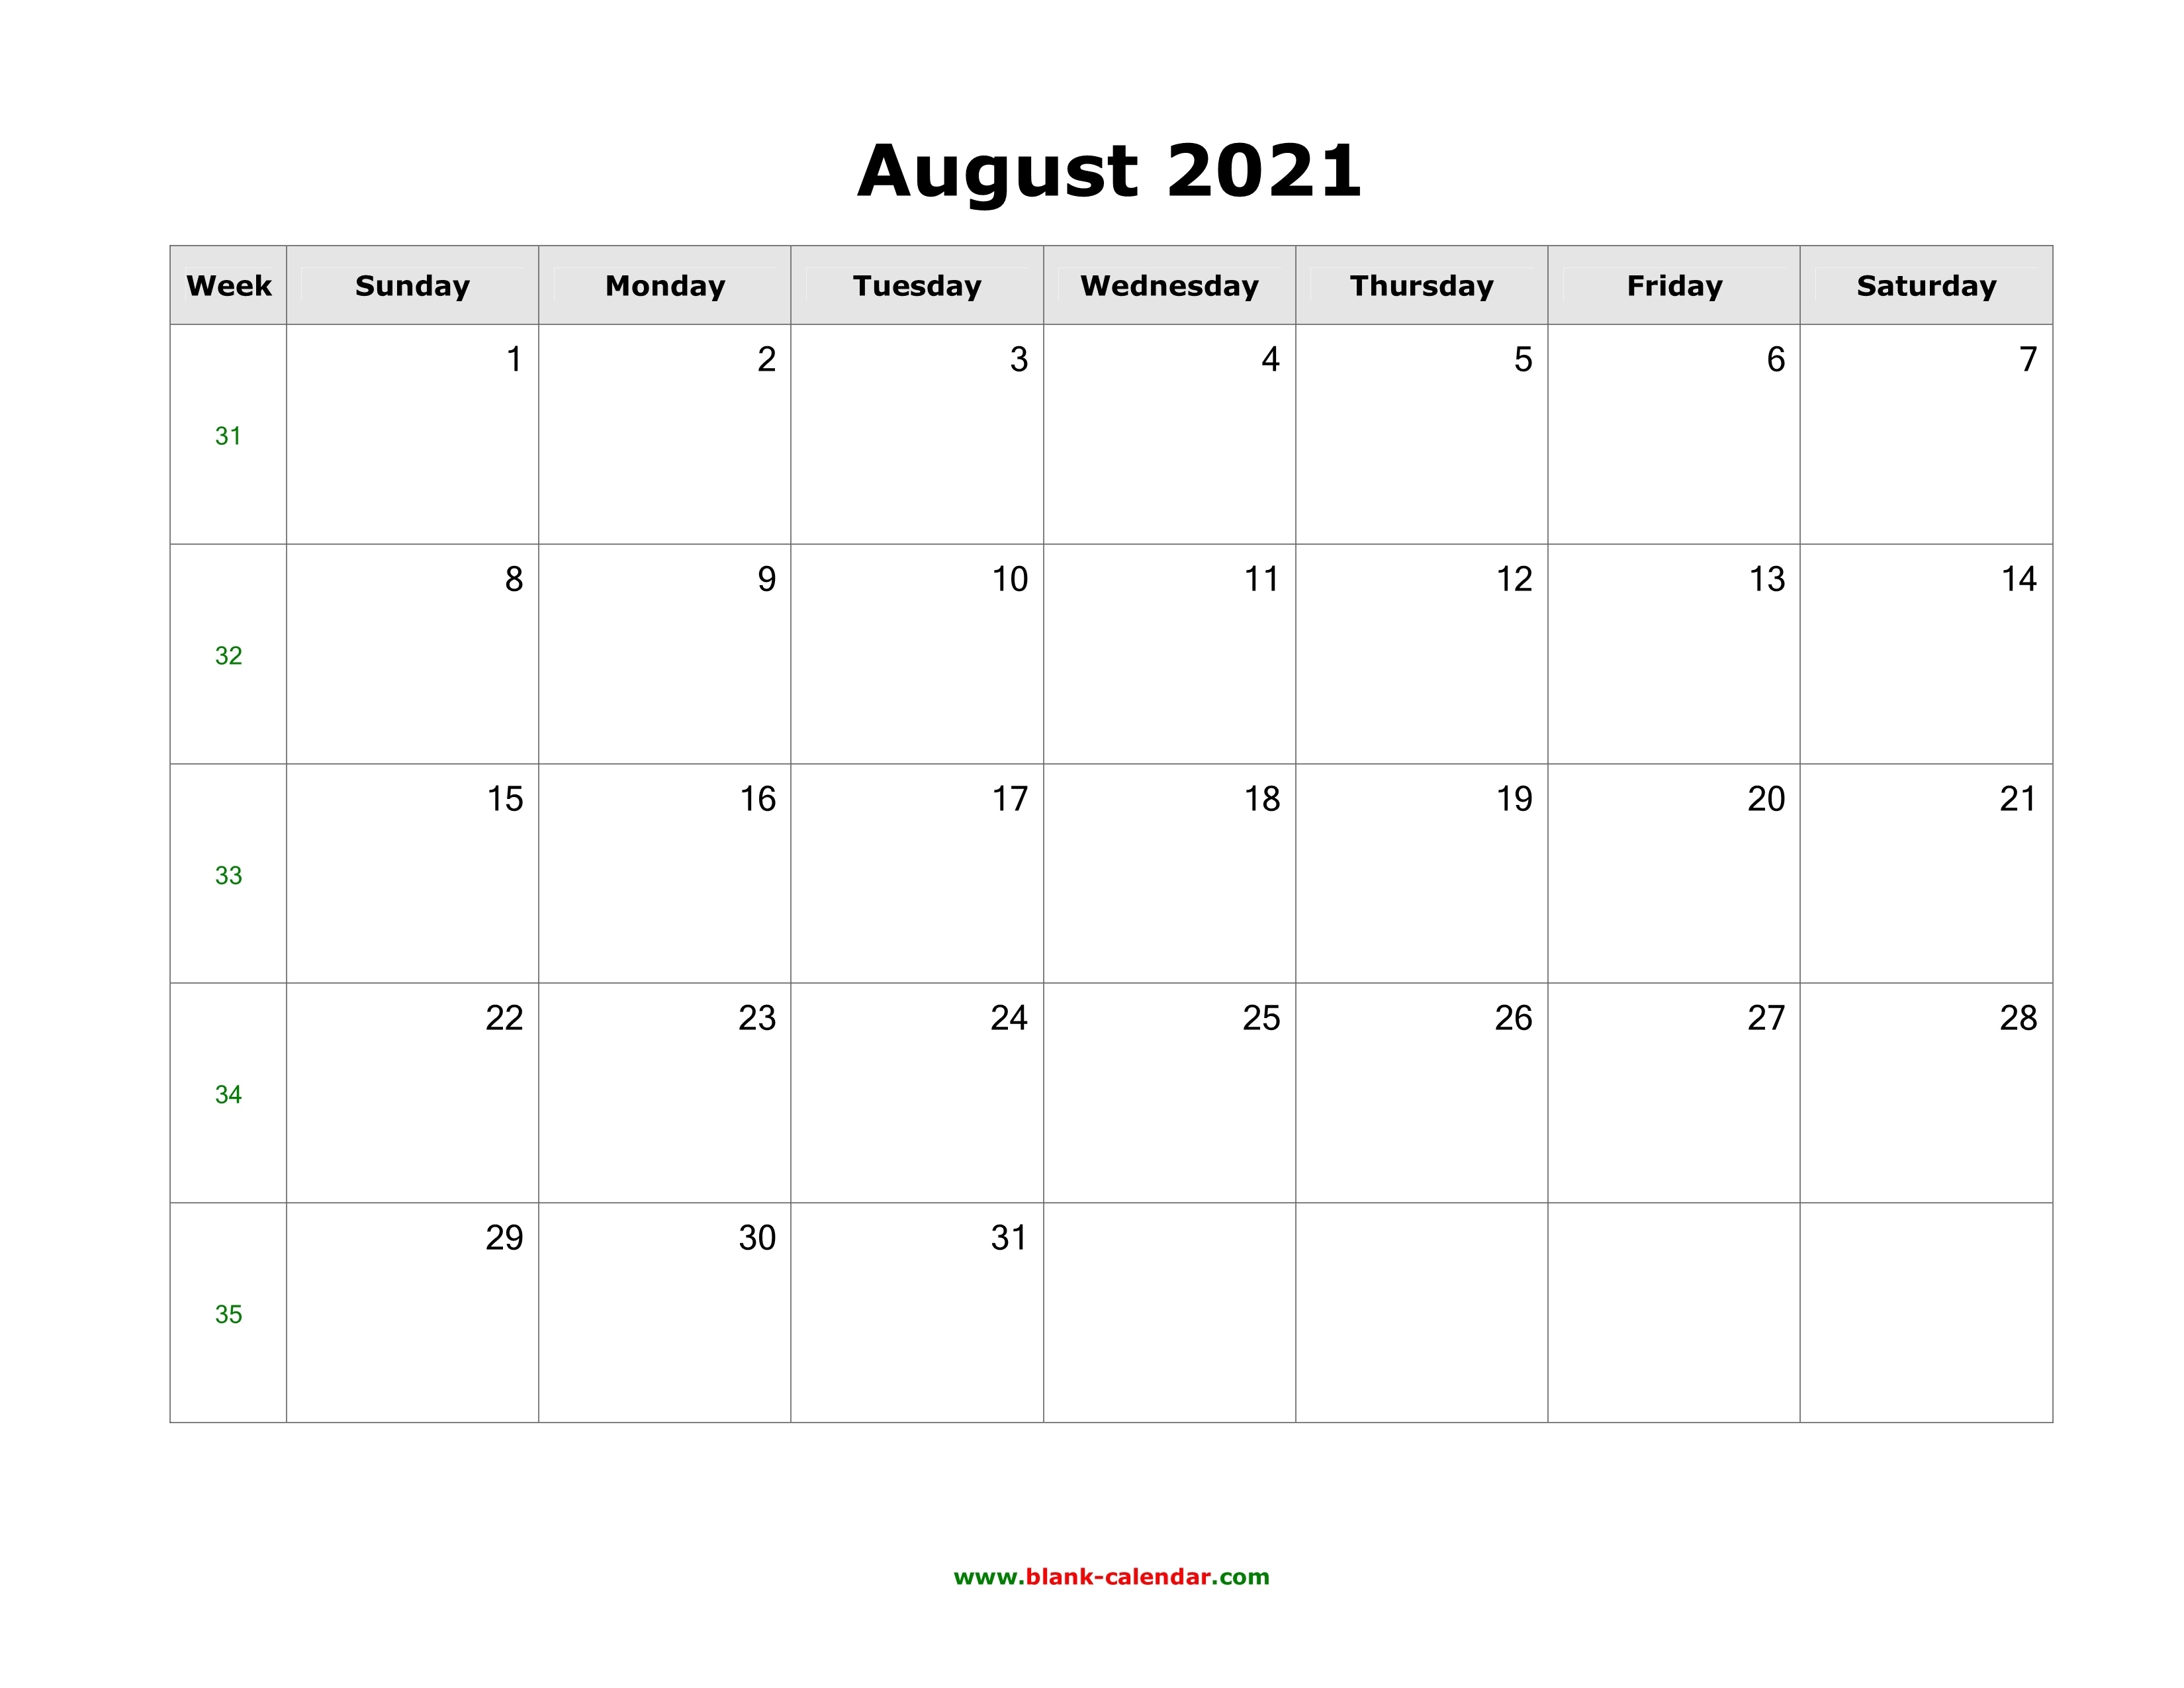 Download August 2021 Blank Calendar (Horizontal) August 2021 Calendar Template Word